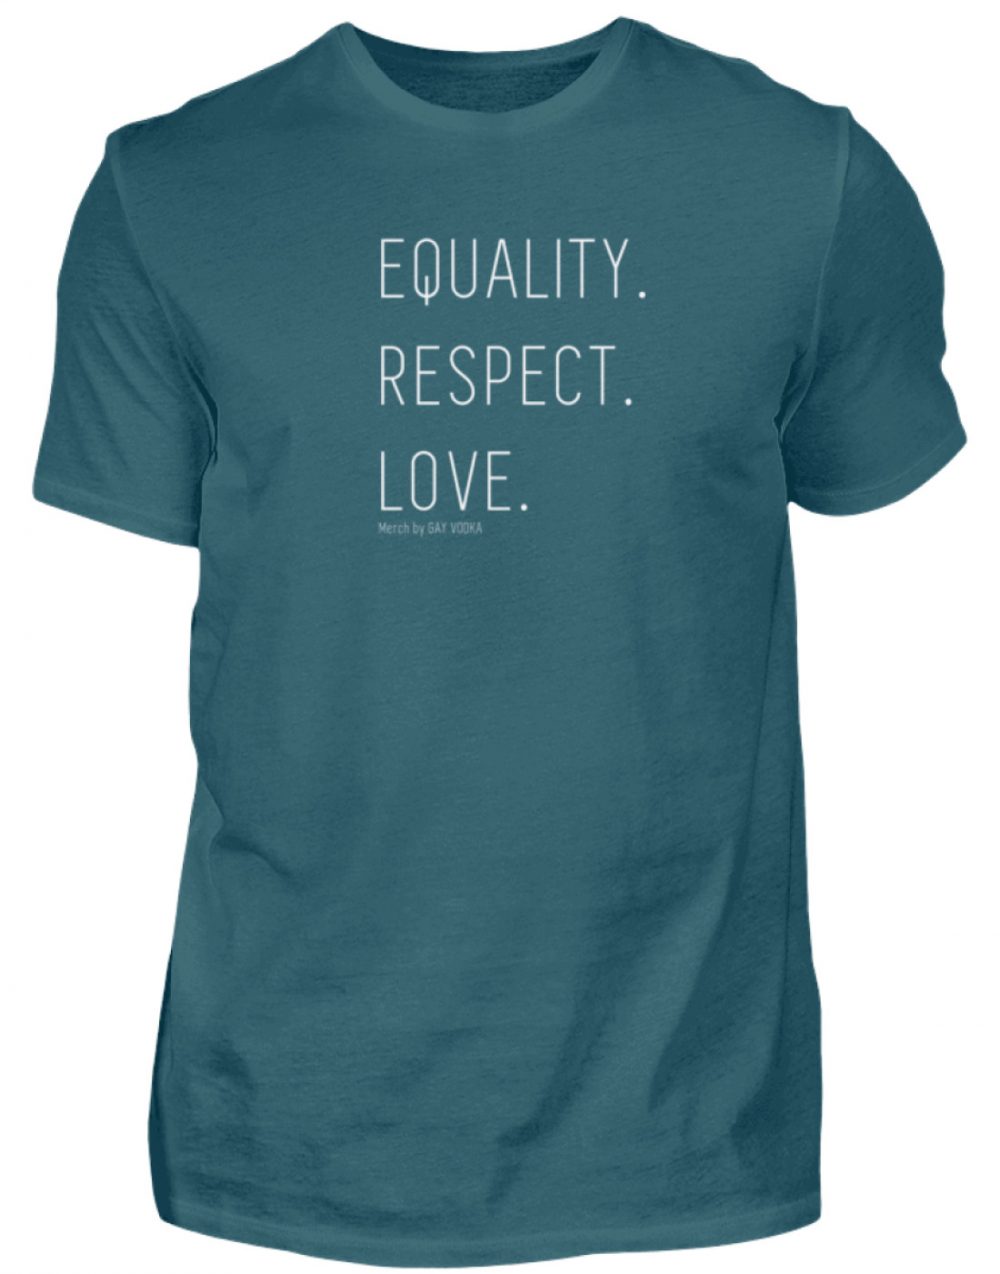 EQUALITY. RESPECT. LOVE. - Herren Shirt-1096